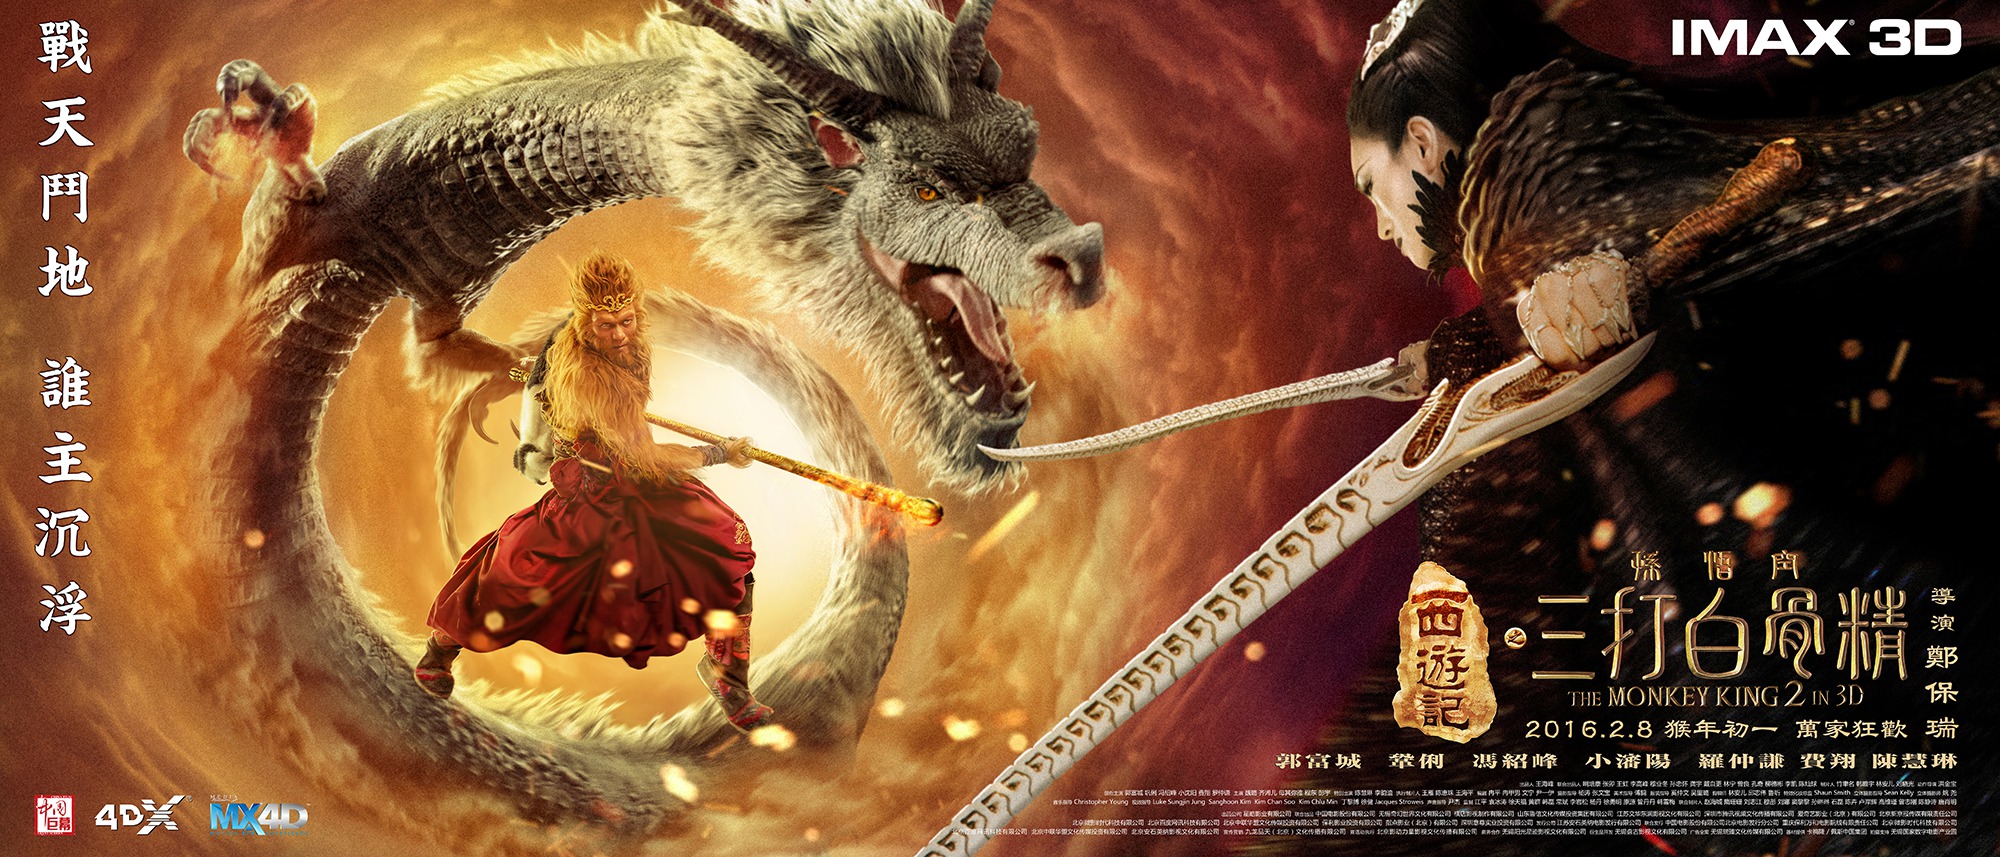 Mega Sized Movie Poster Image for Xi you ji zhi: Sun Wukong san da Baigu Jing (#10 of 17)